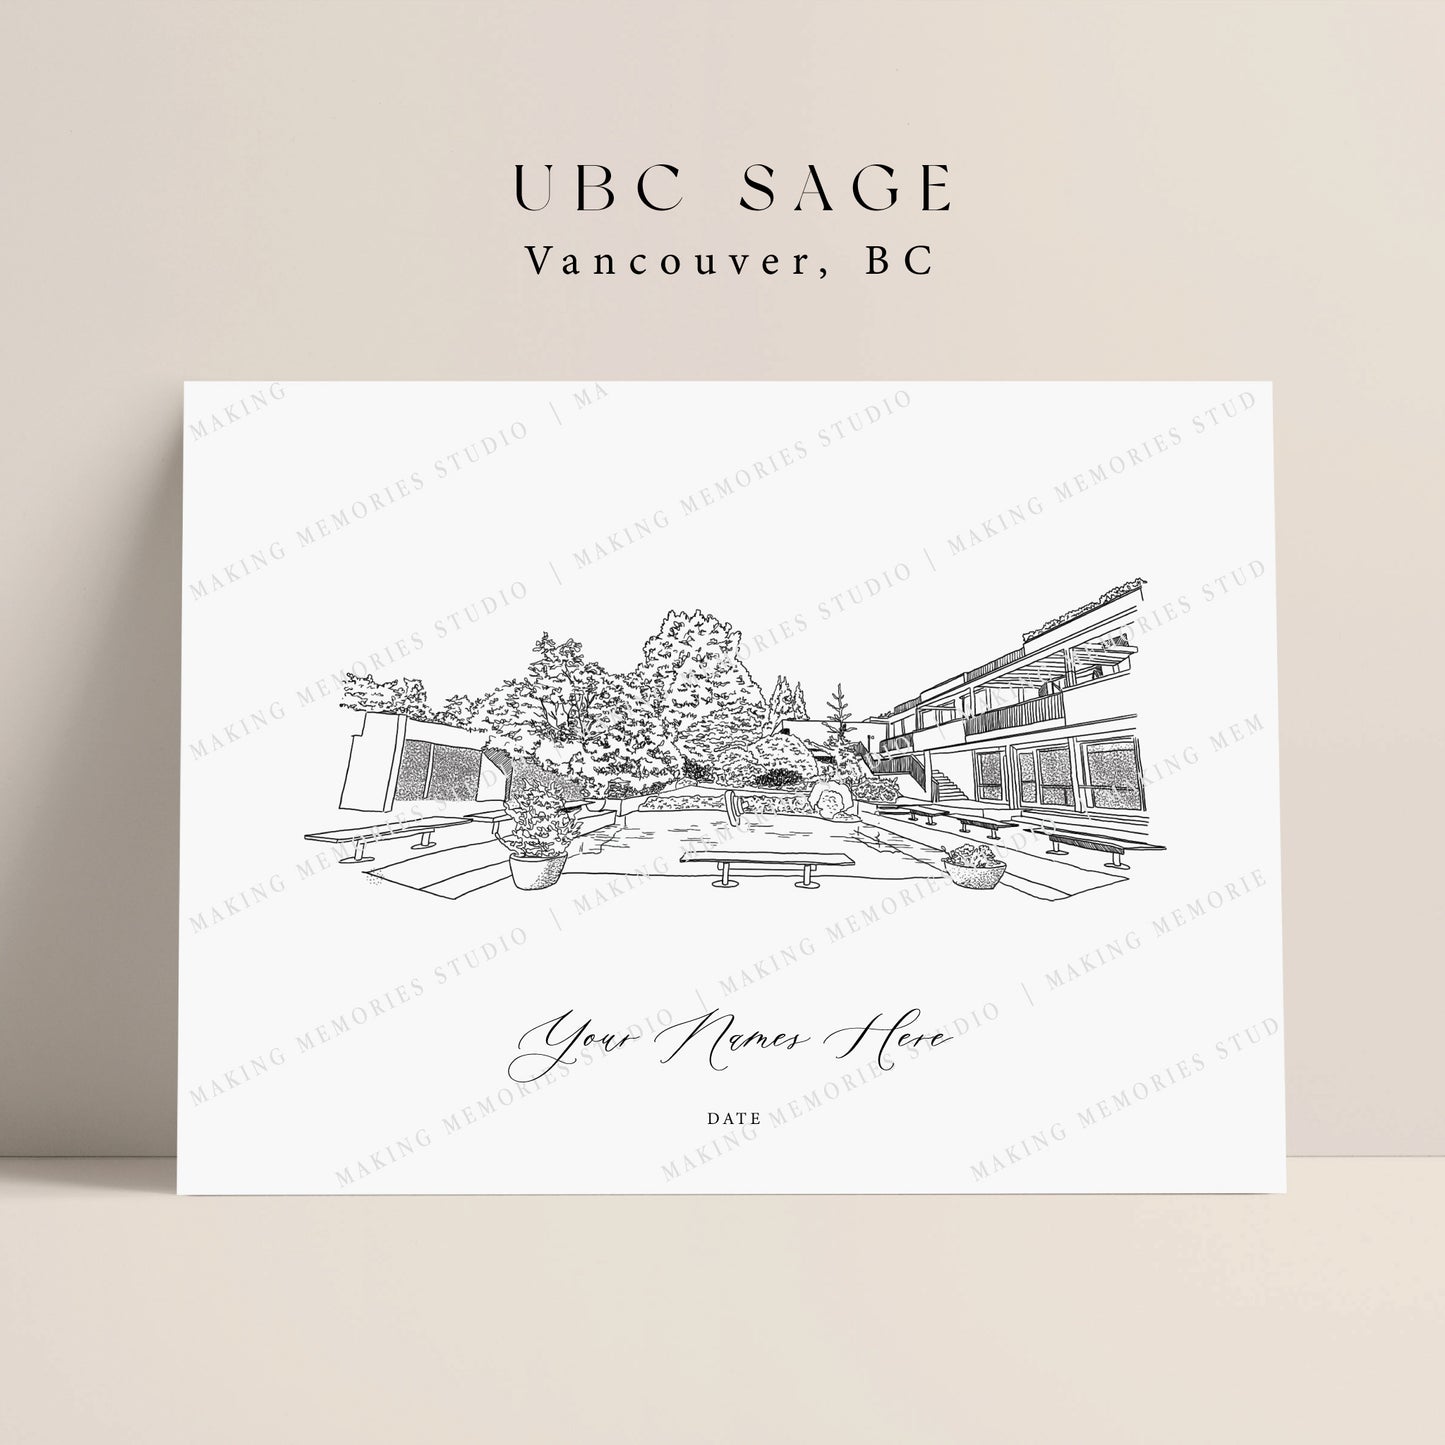 UBC Sage